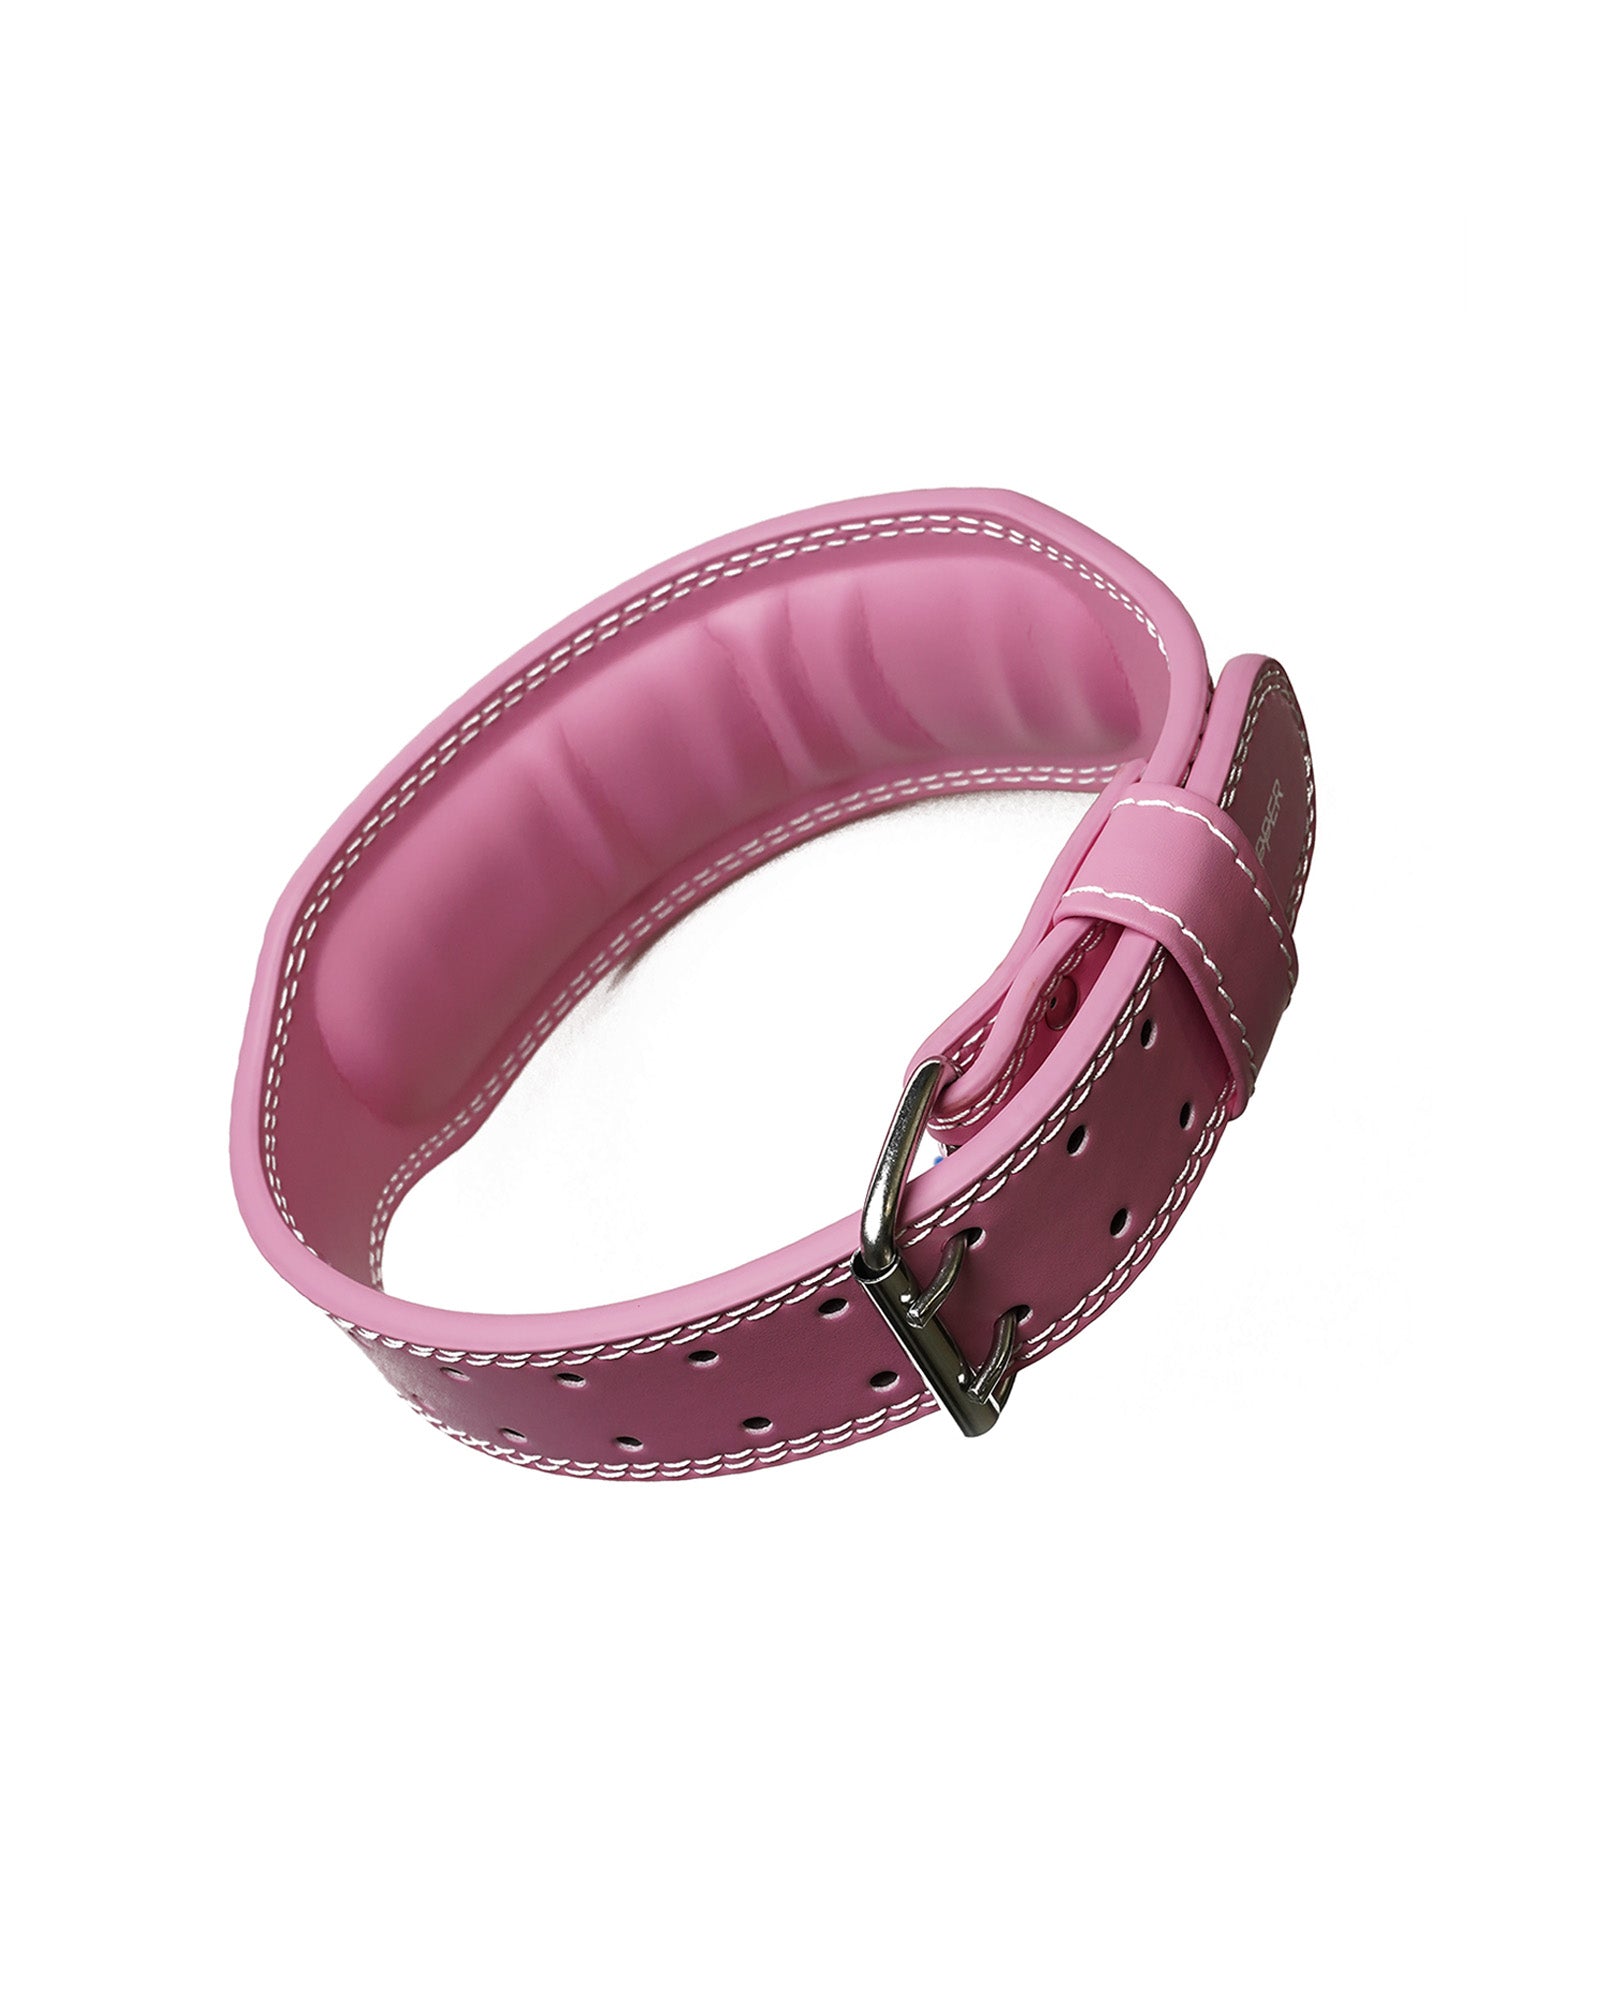 Pikante Angola Ball Lifter C-Ring Pink PIK-0980